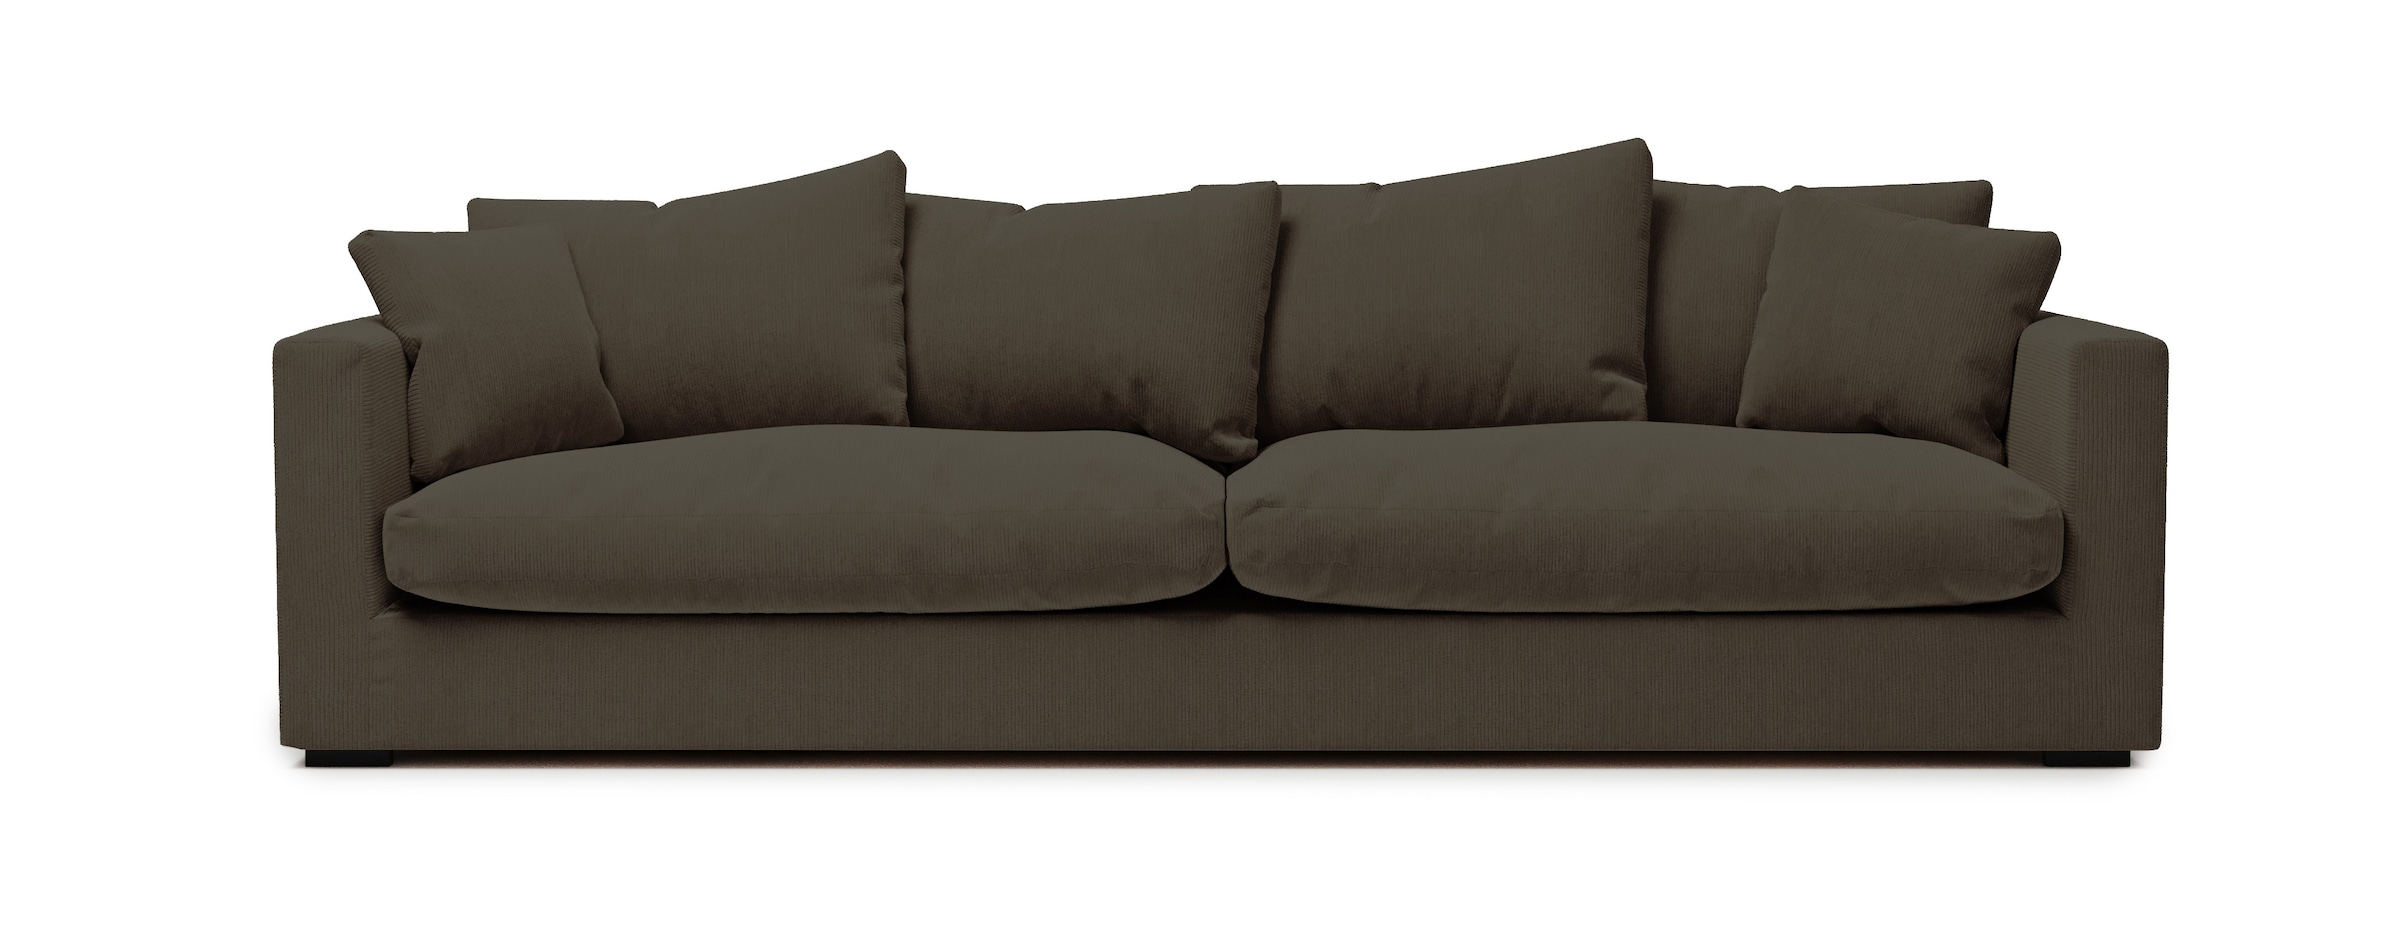 Big-Sofa »Coray«, extra weich und kuschelig, Füllung mit Federn und Daunen